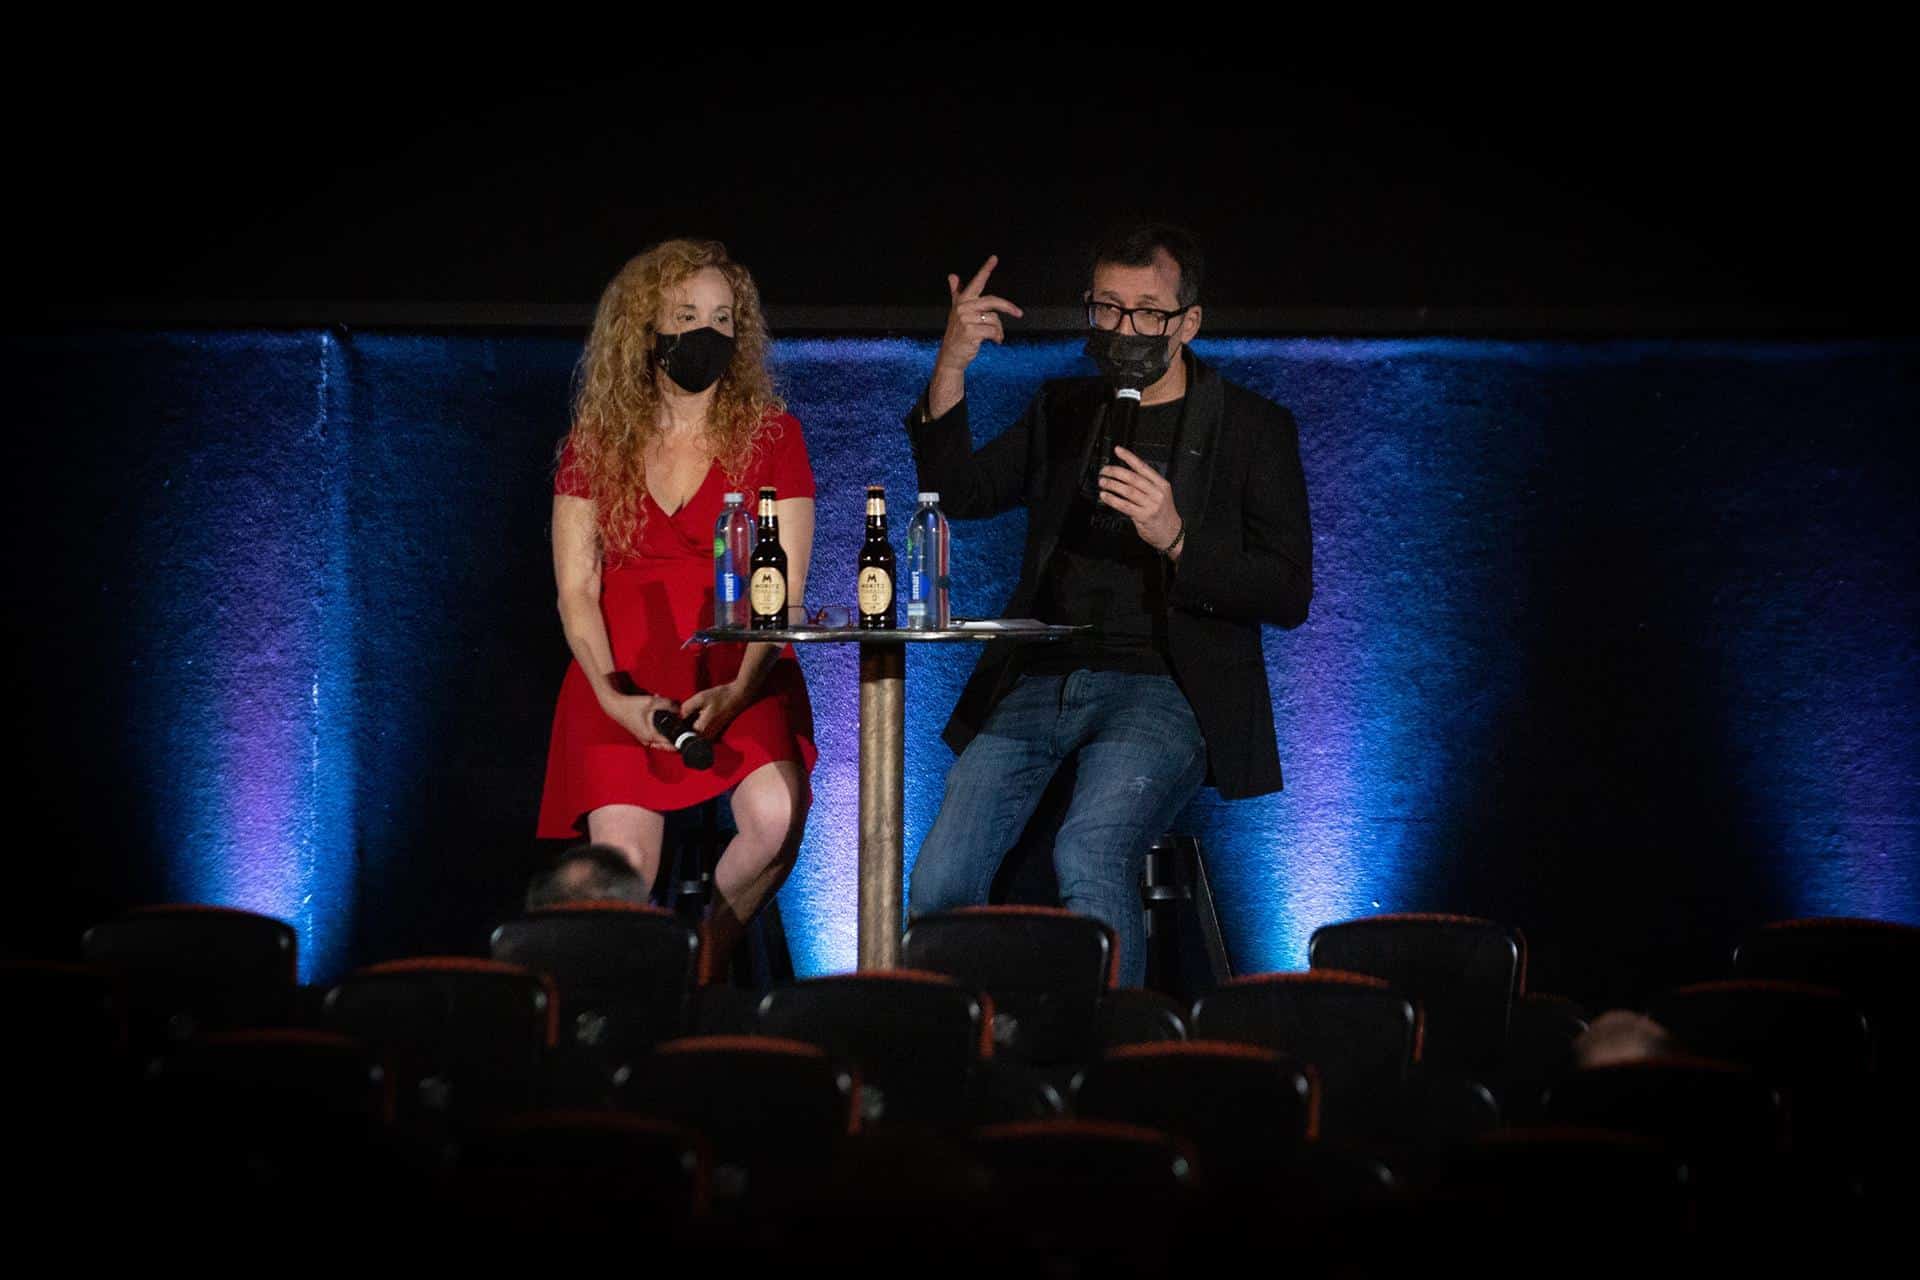 El Festival de Sitges abrirá por primera vez con un filme dirigido por una mujer